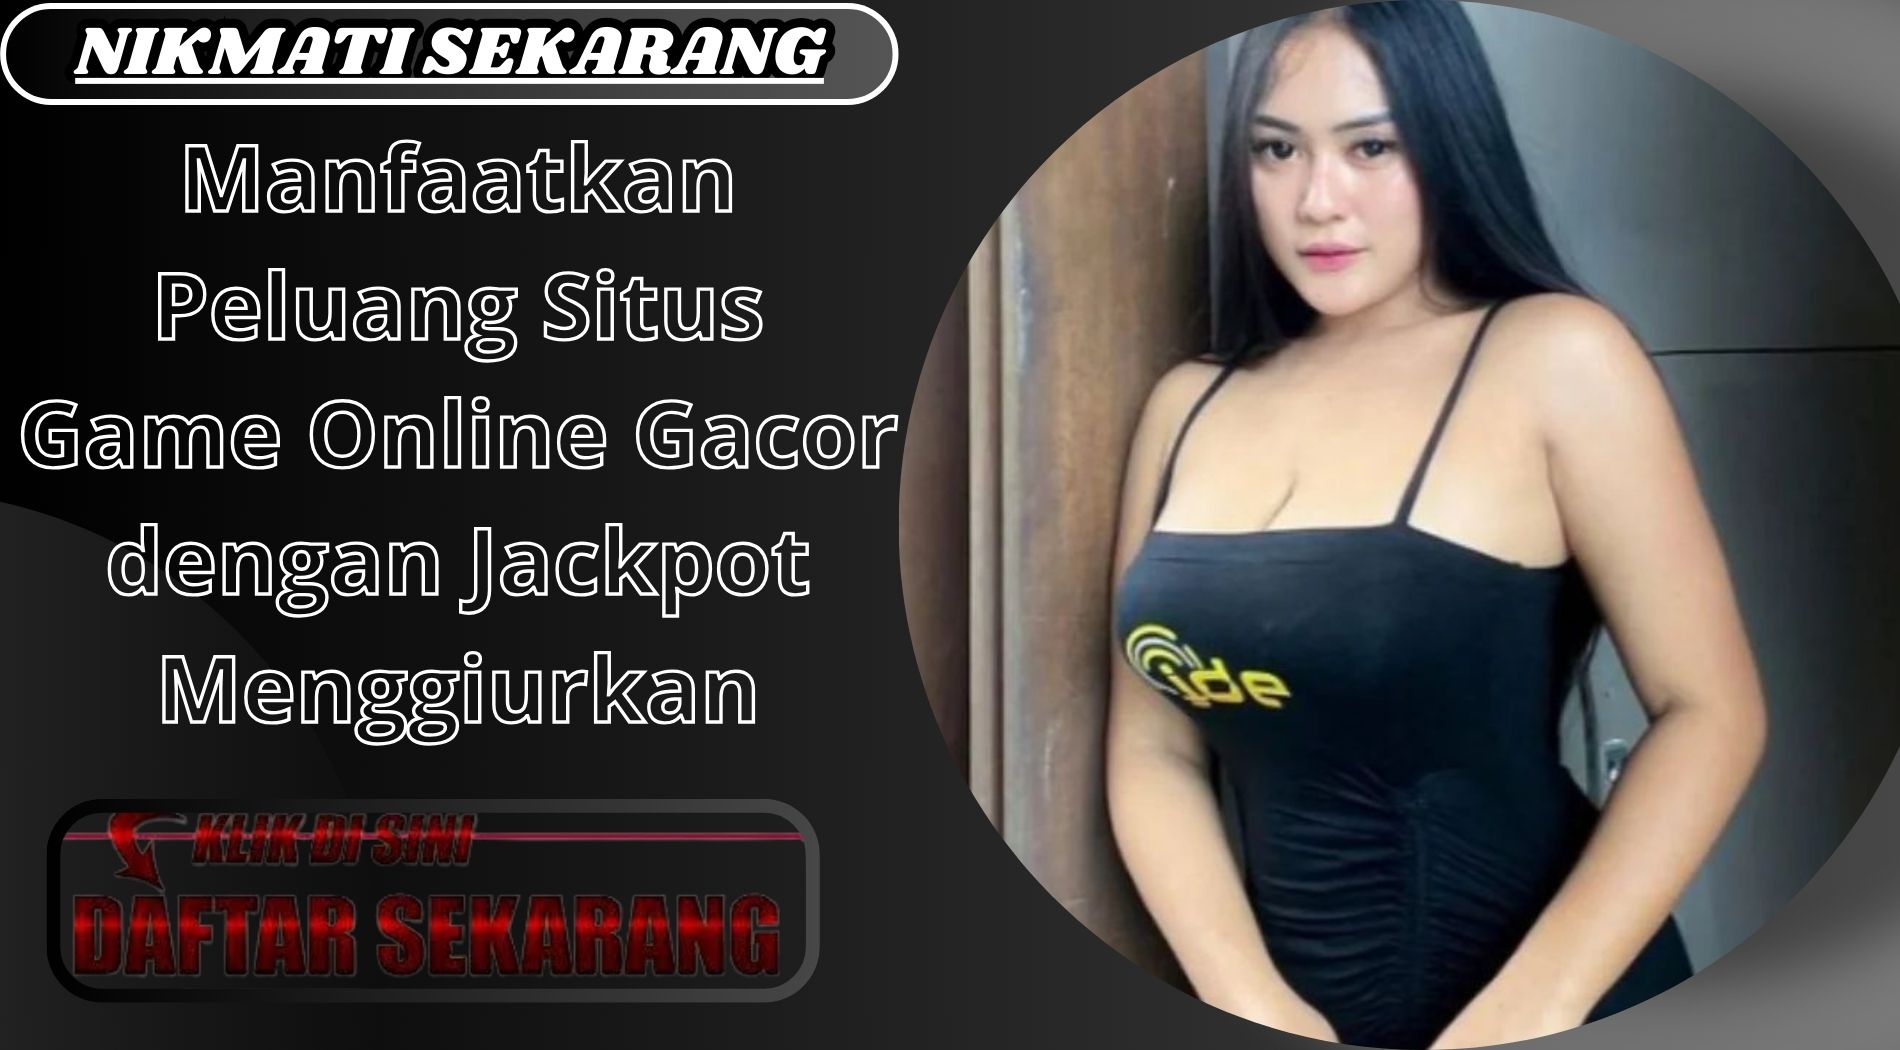 Manfaatkan Peluang Situs Game Online Gacor dengan Jackpot Menggiurkan